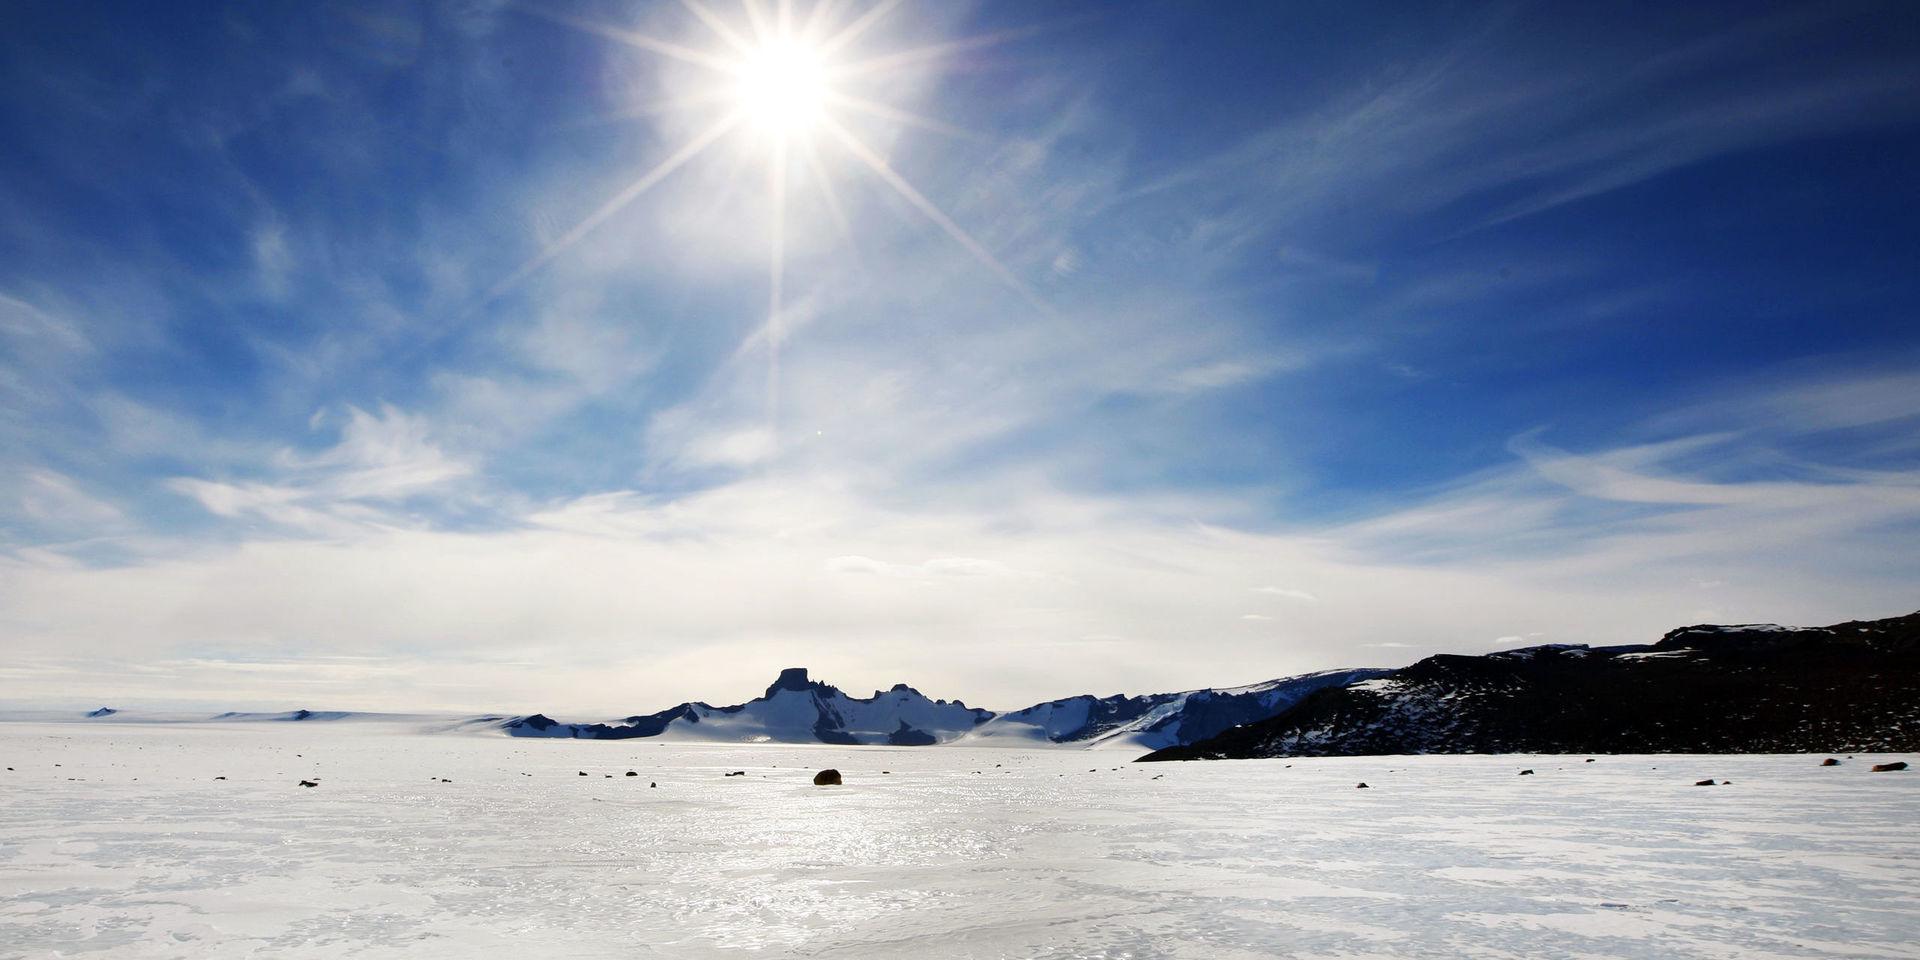 Rekordvärme har uppmätts i Antarktis. Bilden visar området runt den norske forskningsstationen Troll i Drottning Mauds land på Antarktis. 